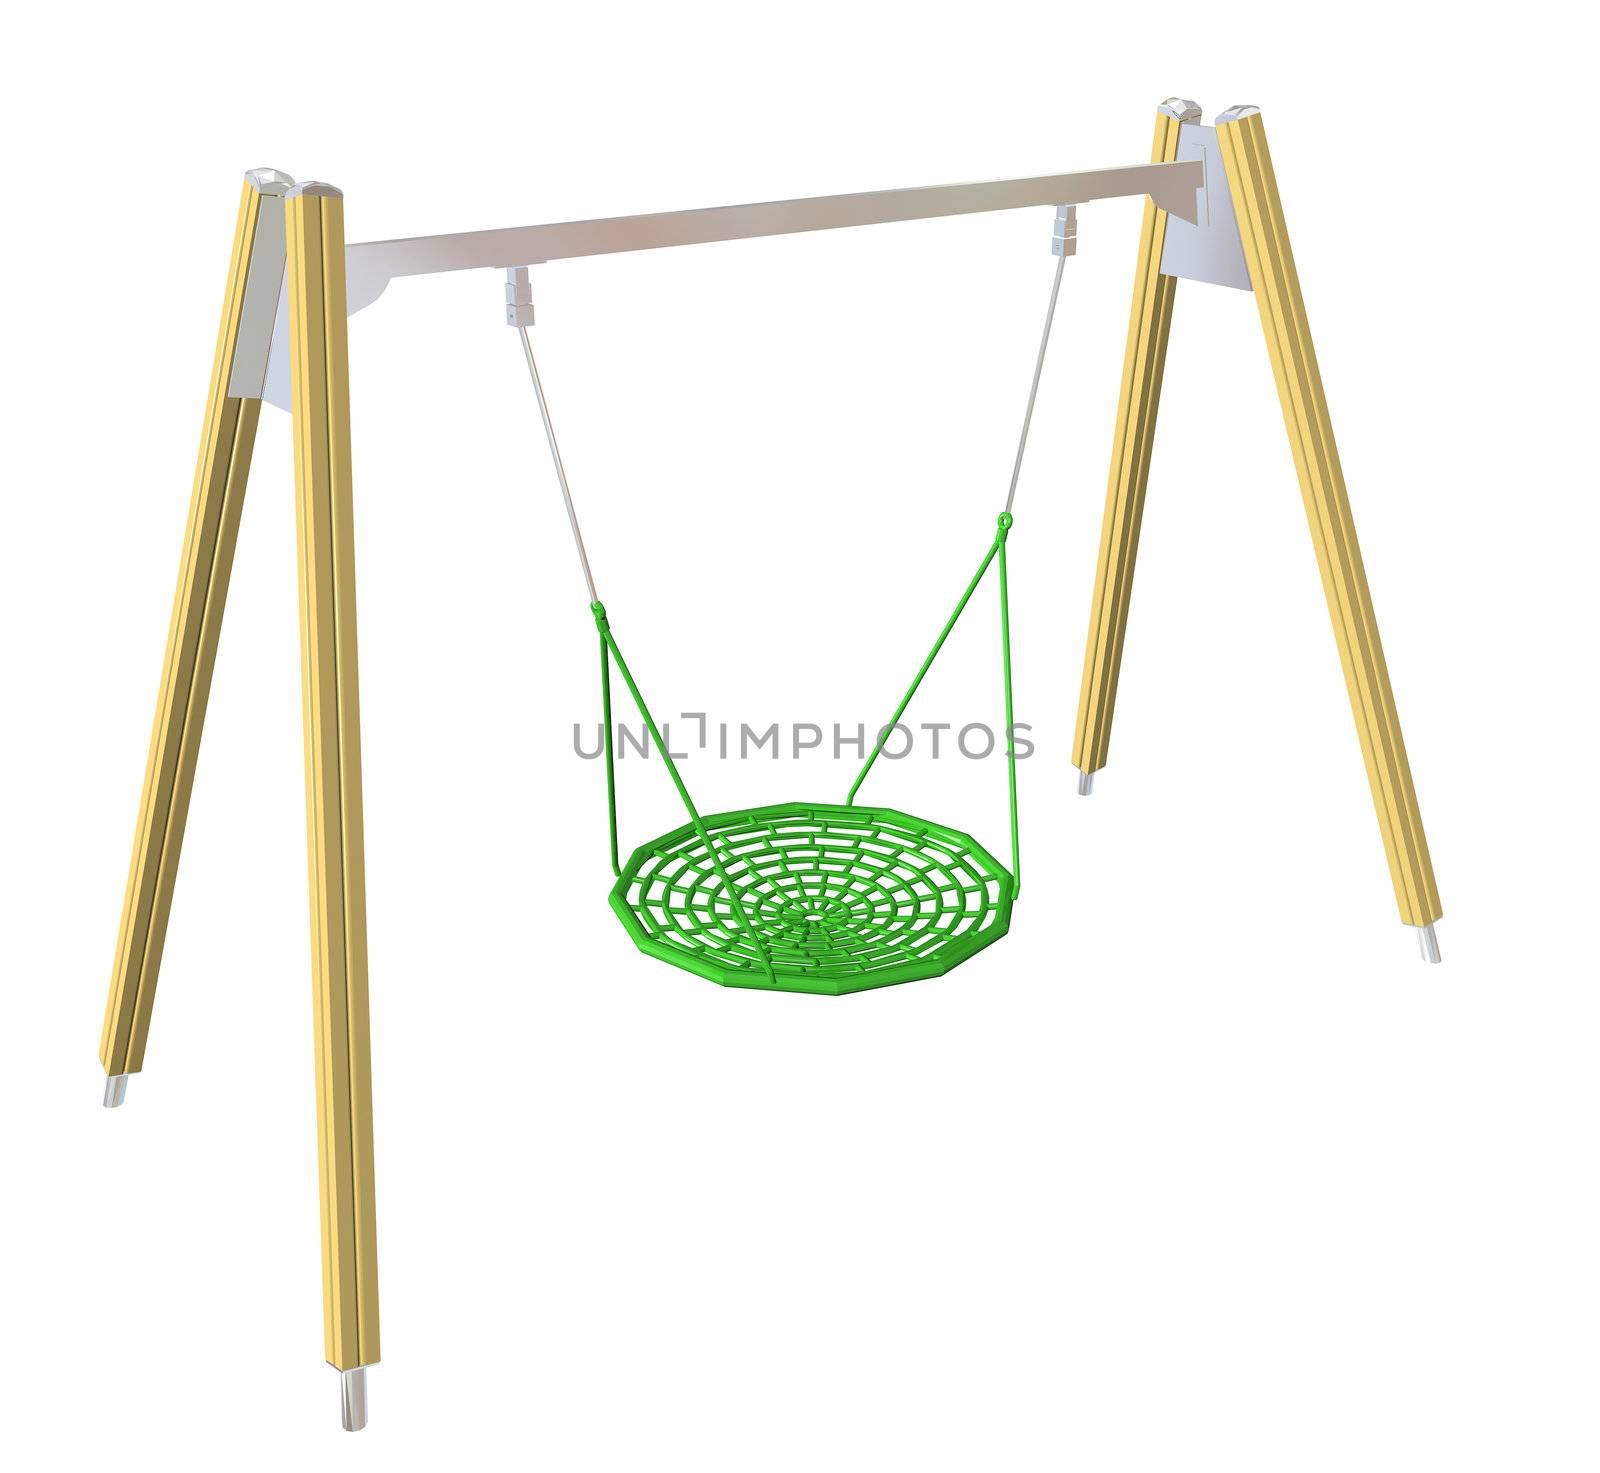 Netted swing, 3D illustration by Morphart